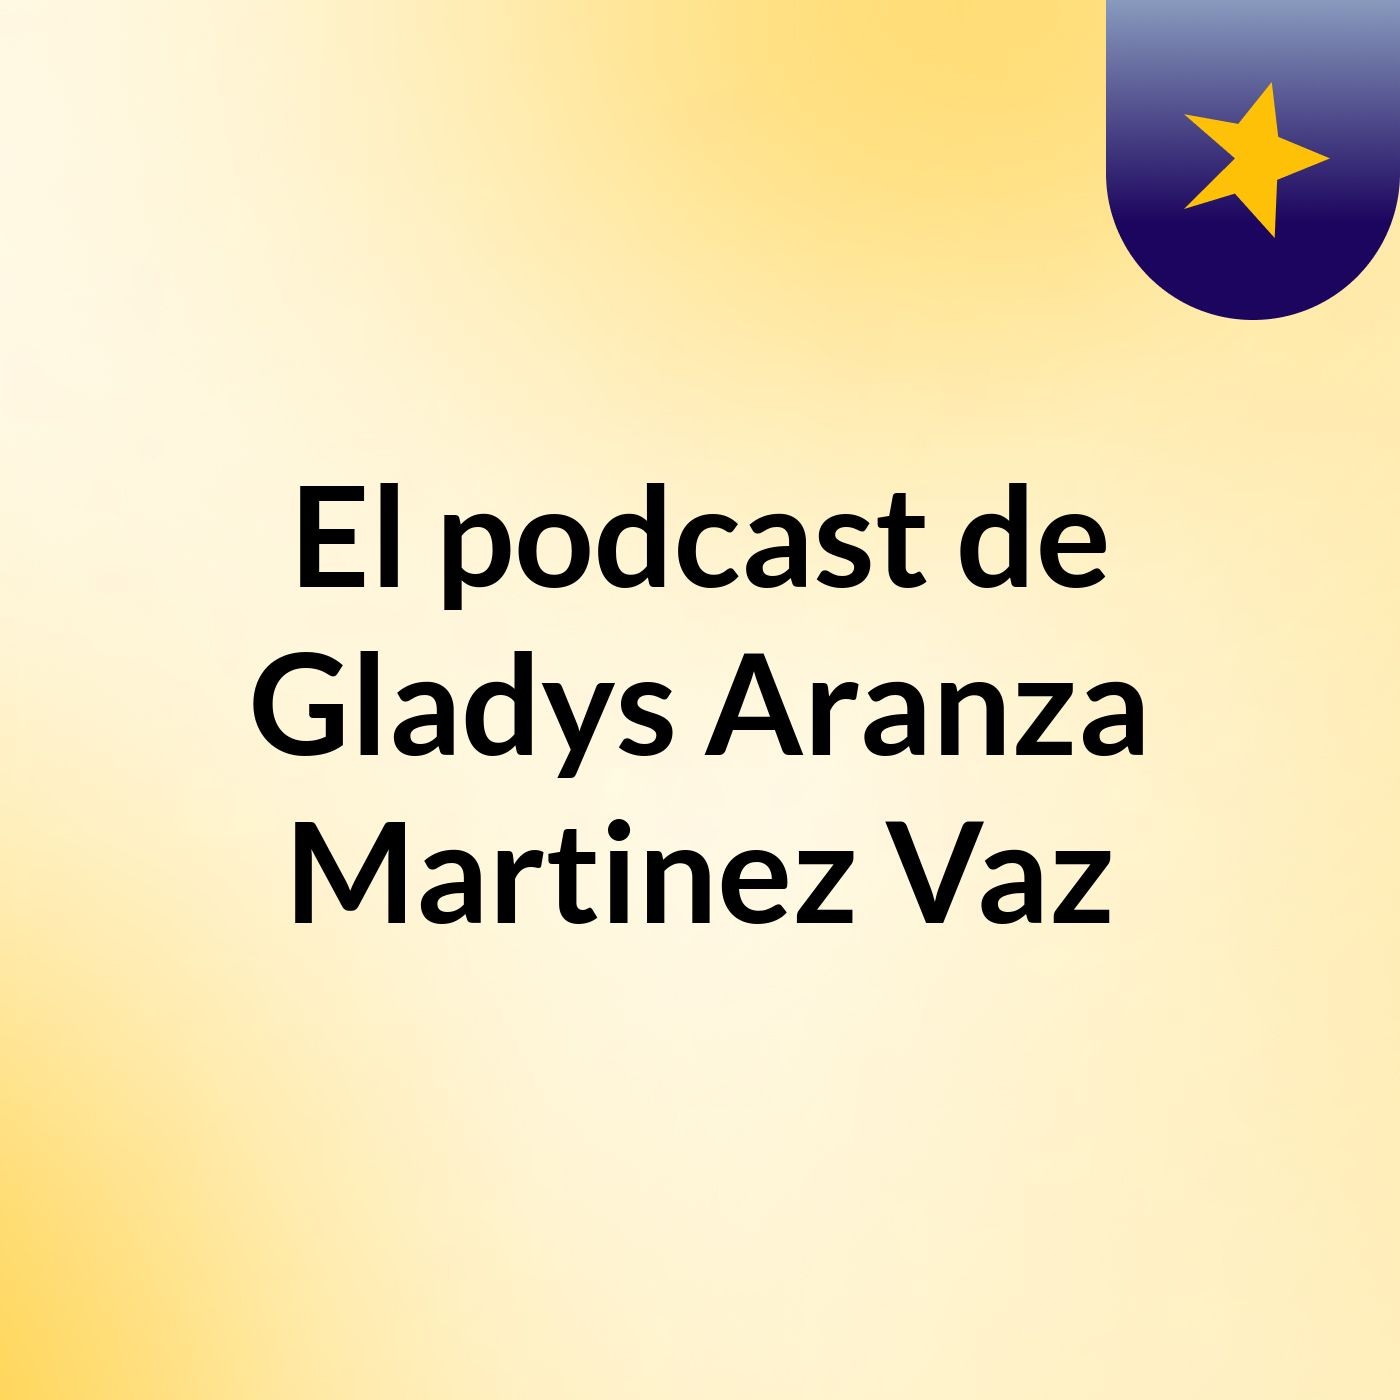 El podcast de Gladys Aranza Martinez Vaz